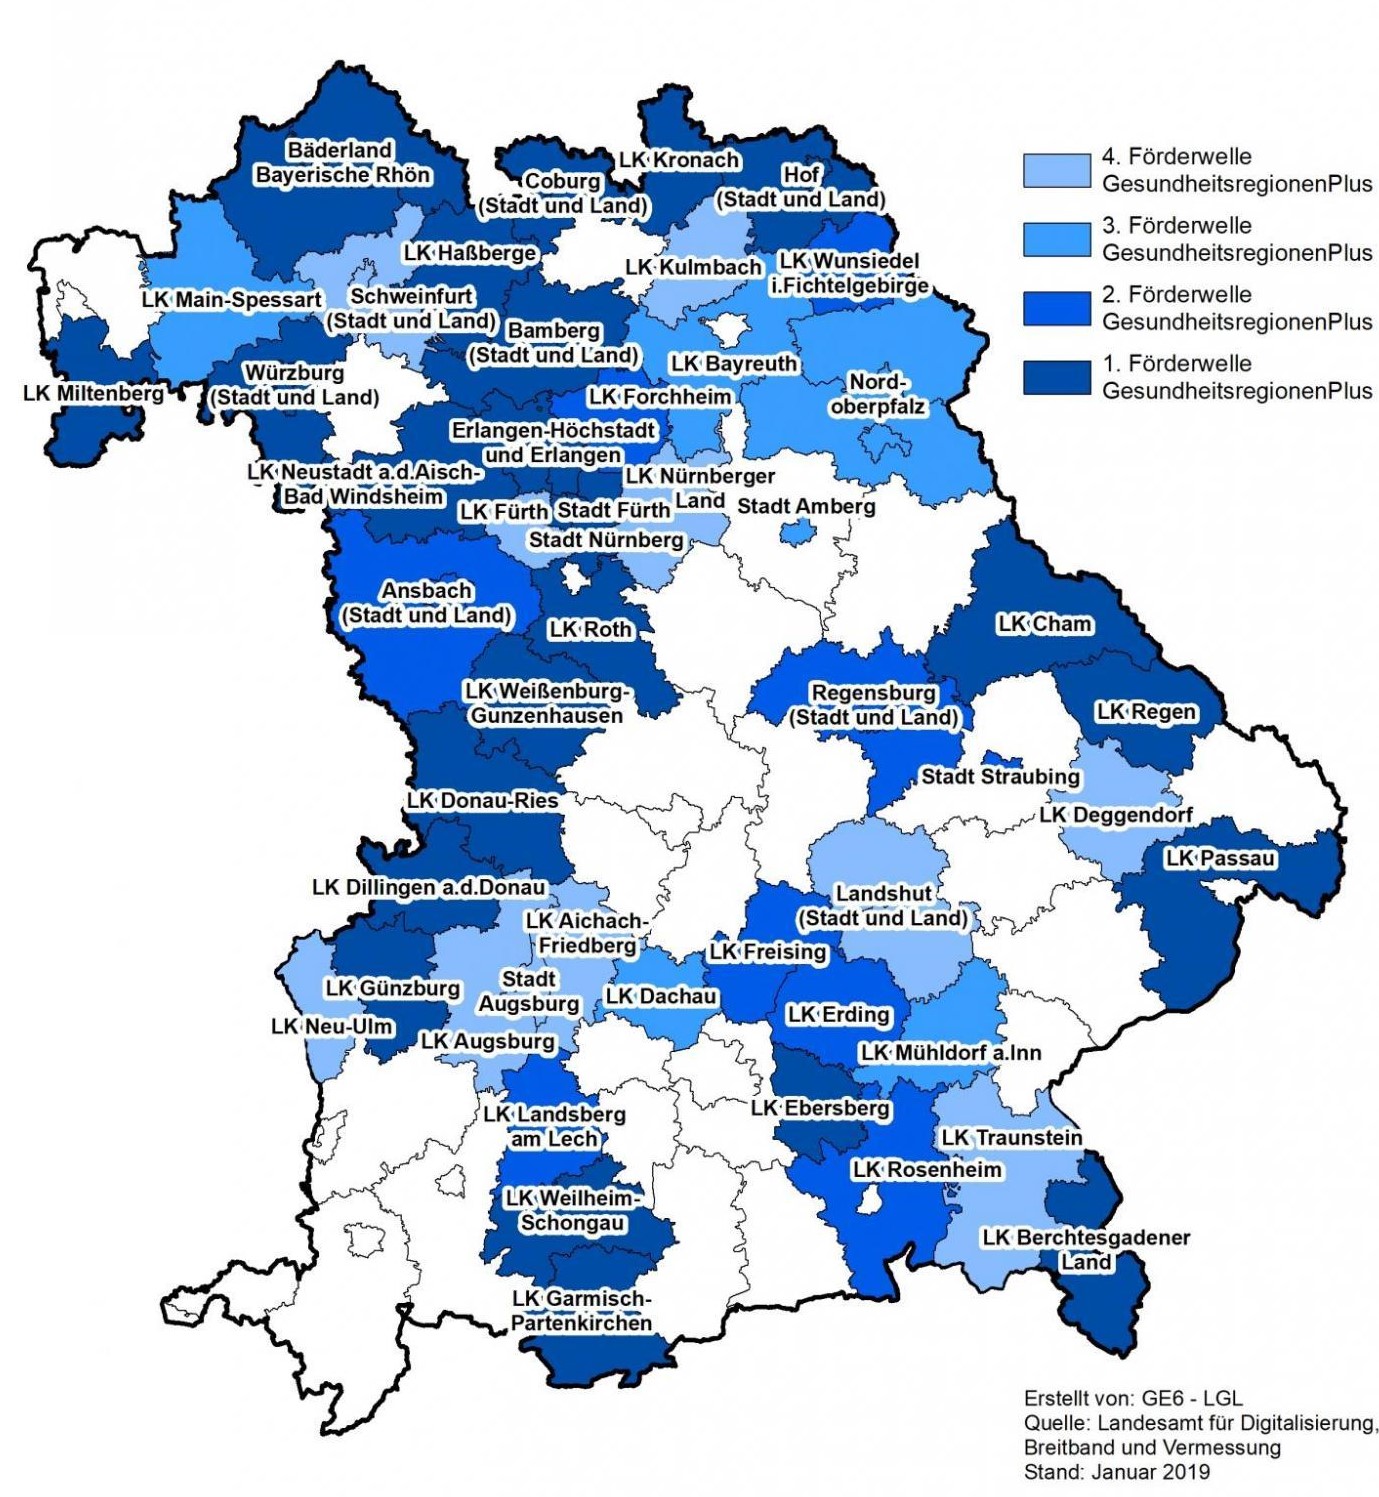 Aktuell geförderte Gesundheitsregionen plus in Bayern